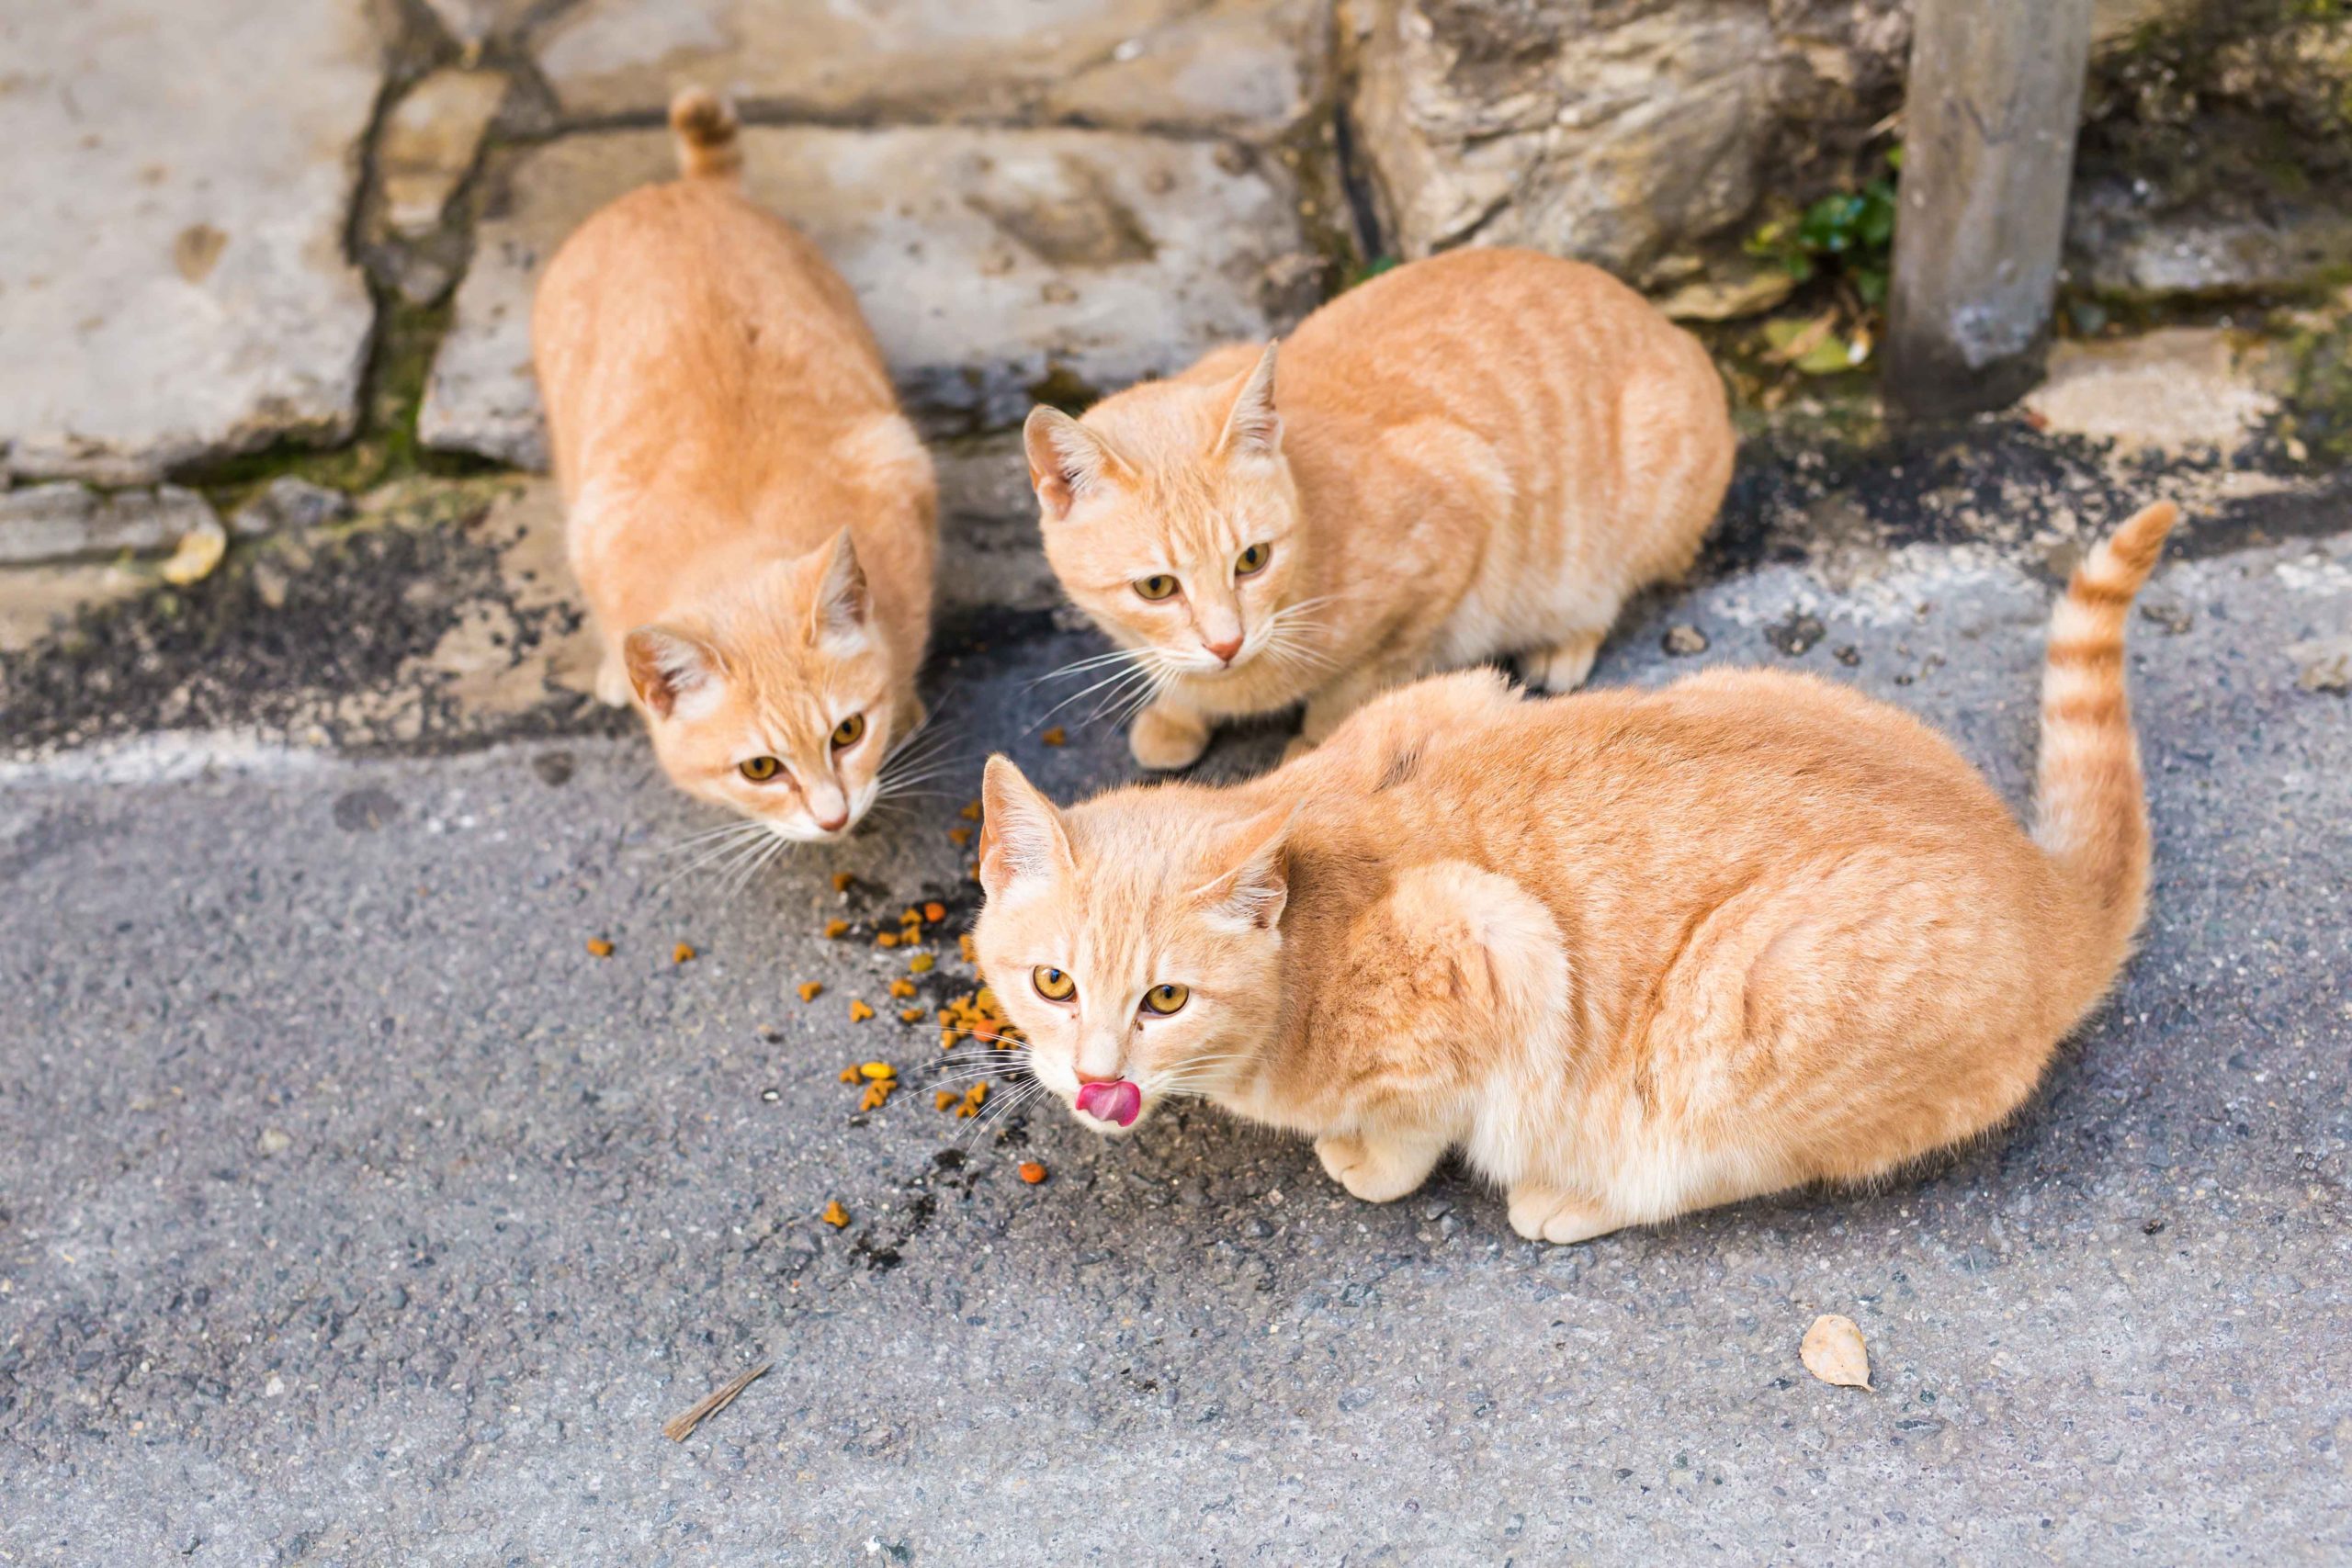 Ingestione di sostanze tossiche nei gatti: a cosa stare attenti